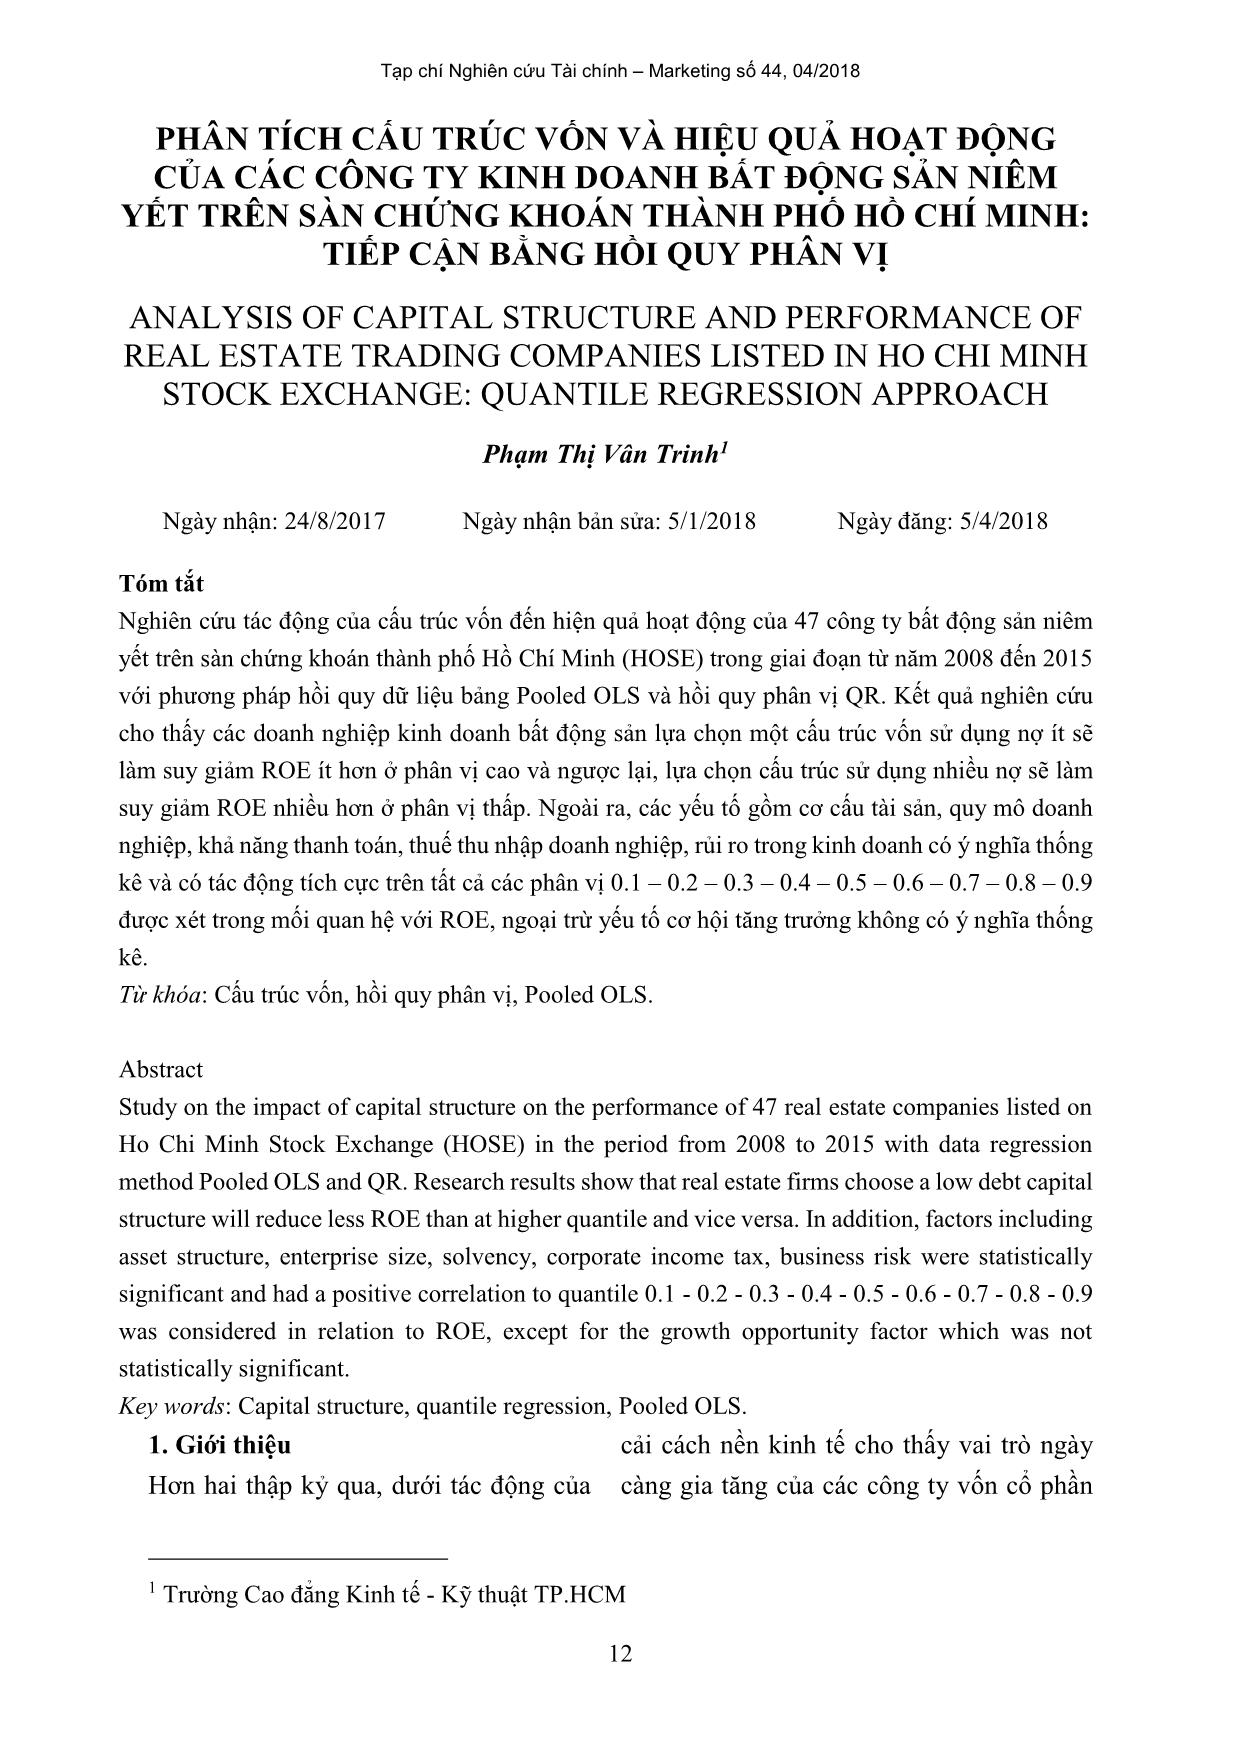 Phân tích cấu trúc vốn và hiệu quả hoạt động của các công ty kinh doanh bất động sản niêm yết trên sàn chứng khoán thành phố Hồ Chí Minh: Tiếp cận bằng hồi quy phân vị trang 1